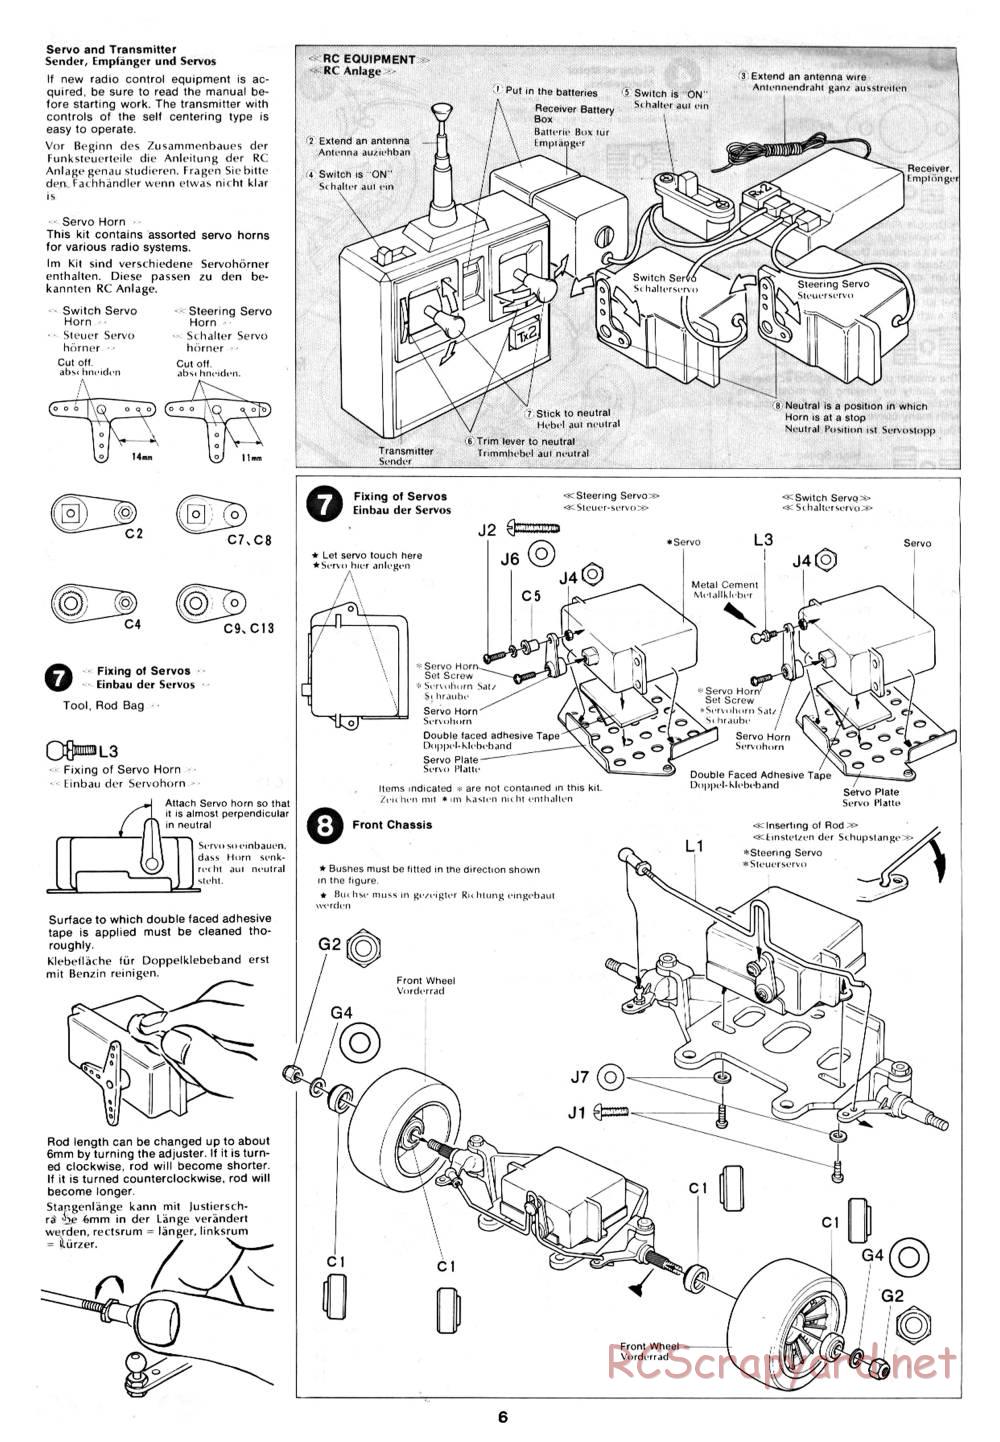 Tamiya - March 782 BMW (F2) - 58013 - Manual - Page 6